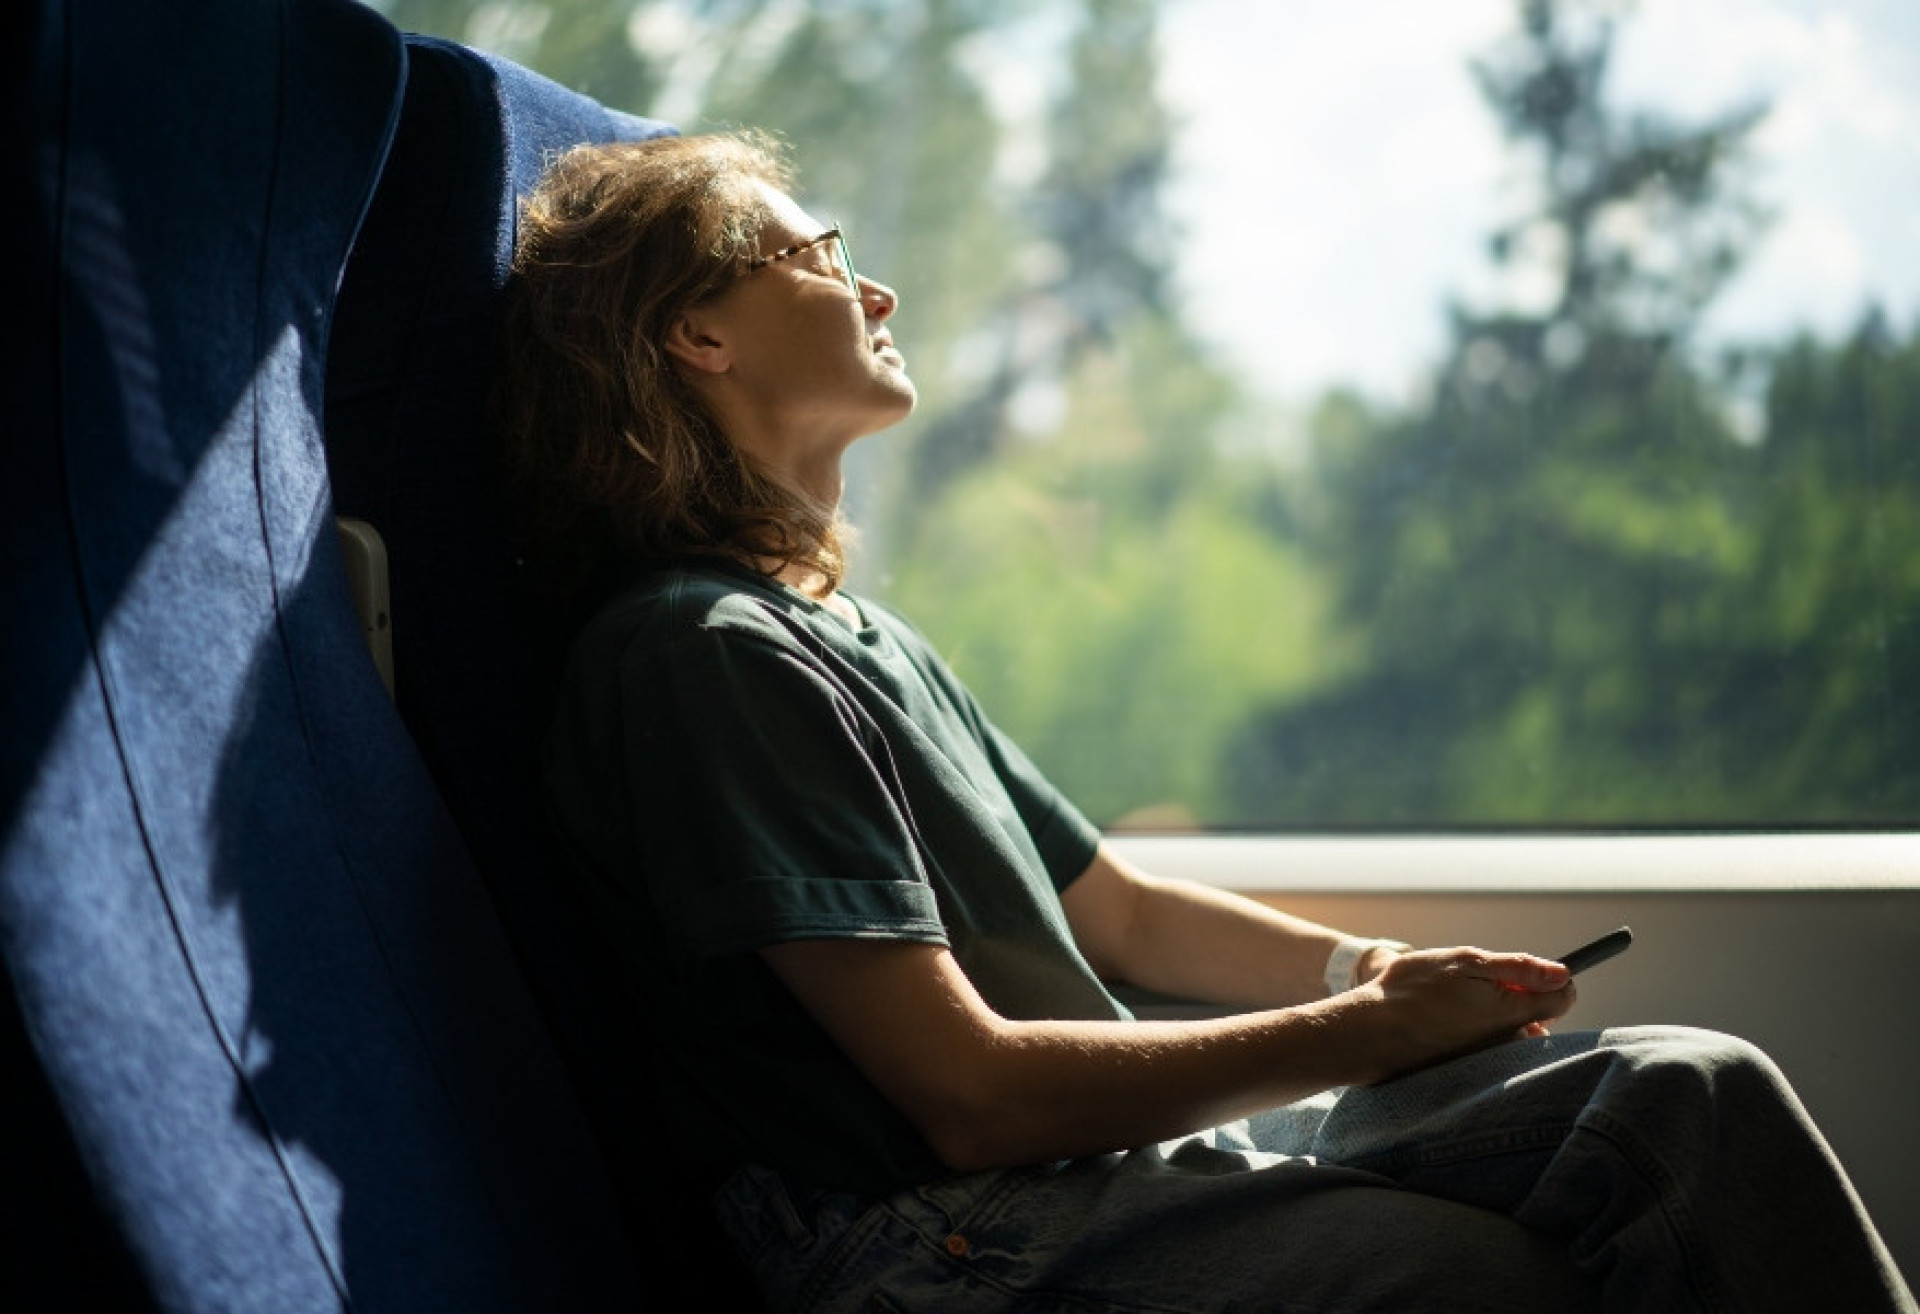 <p>El viaje en tren se desarrolla con suavidad, permitiendo a los pasajeros relajarse en medio de amplias comodidades y vistas panorámicas. Puedes sentarte y dormir un rato si necesitas descansar mientras viajas a tu próximo destino.</p>